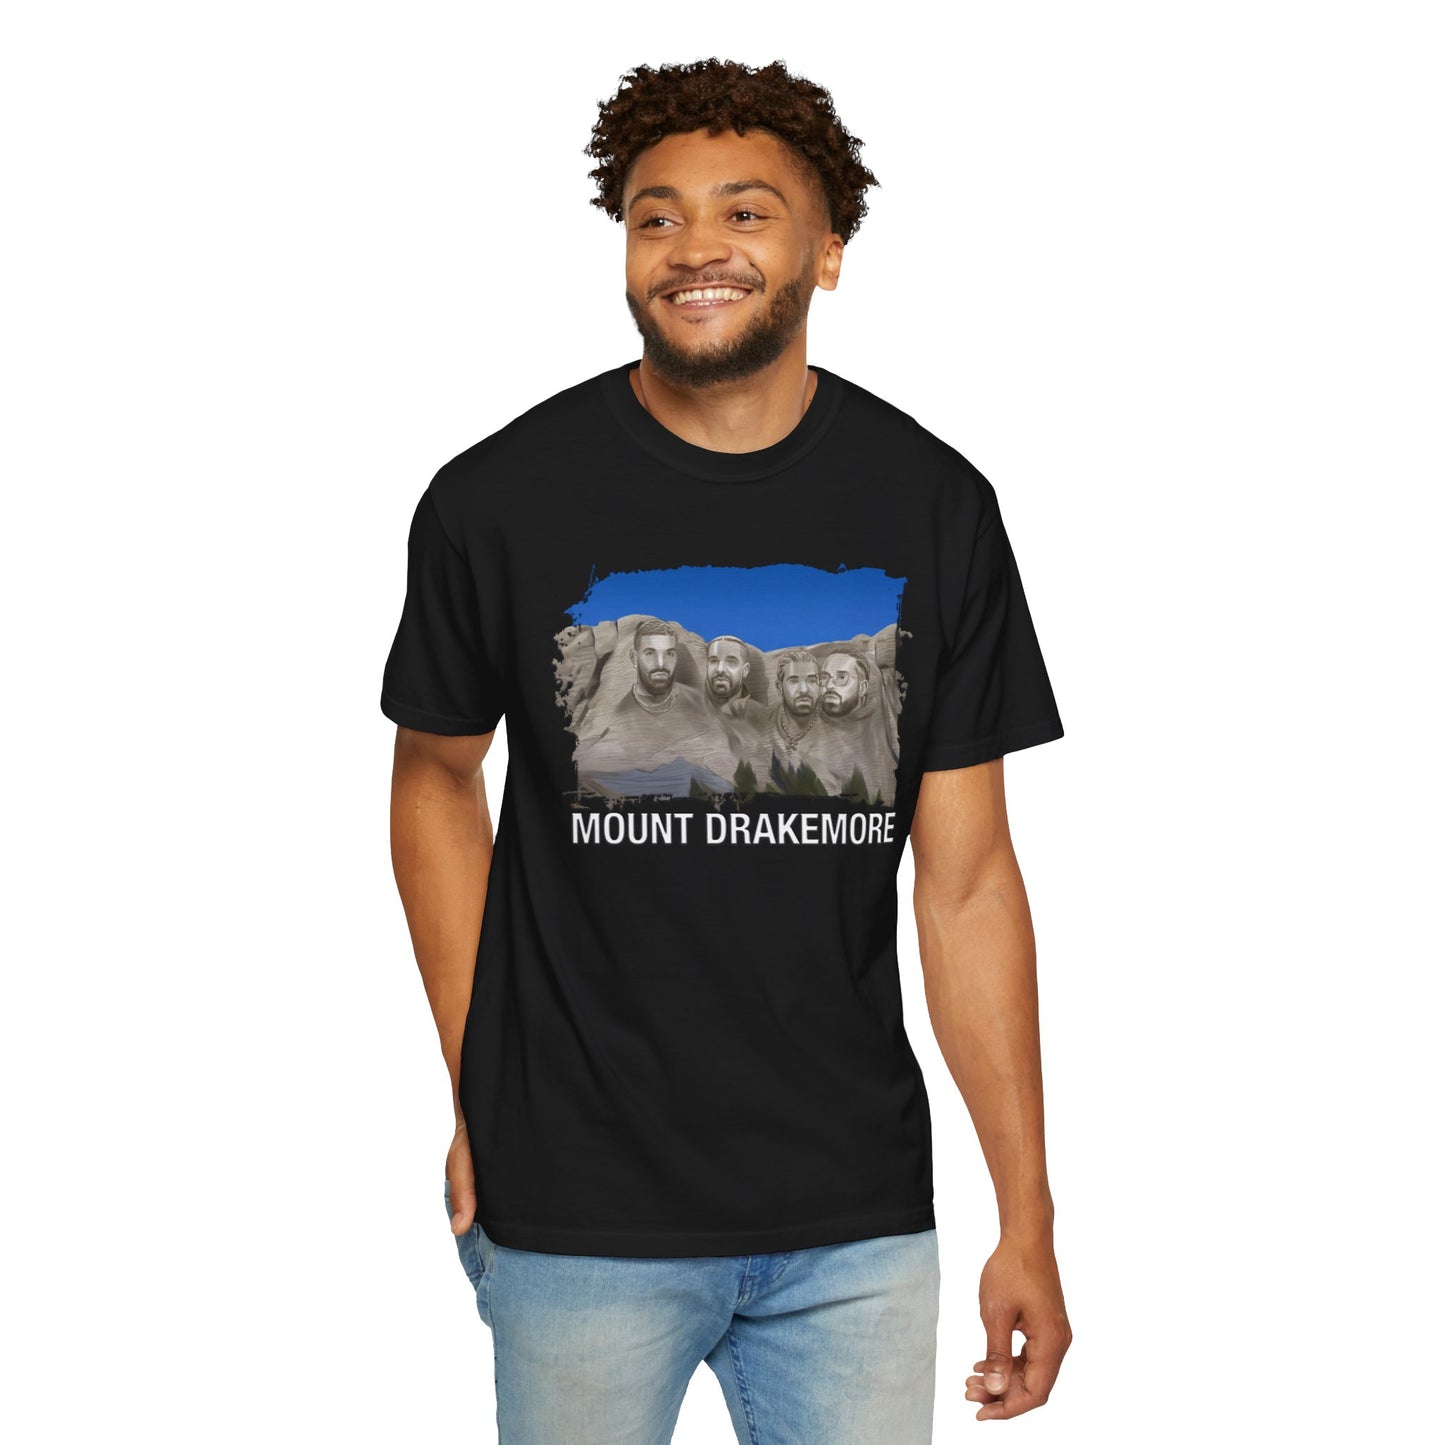 Mount Drakemore T-shirt